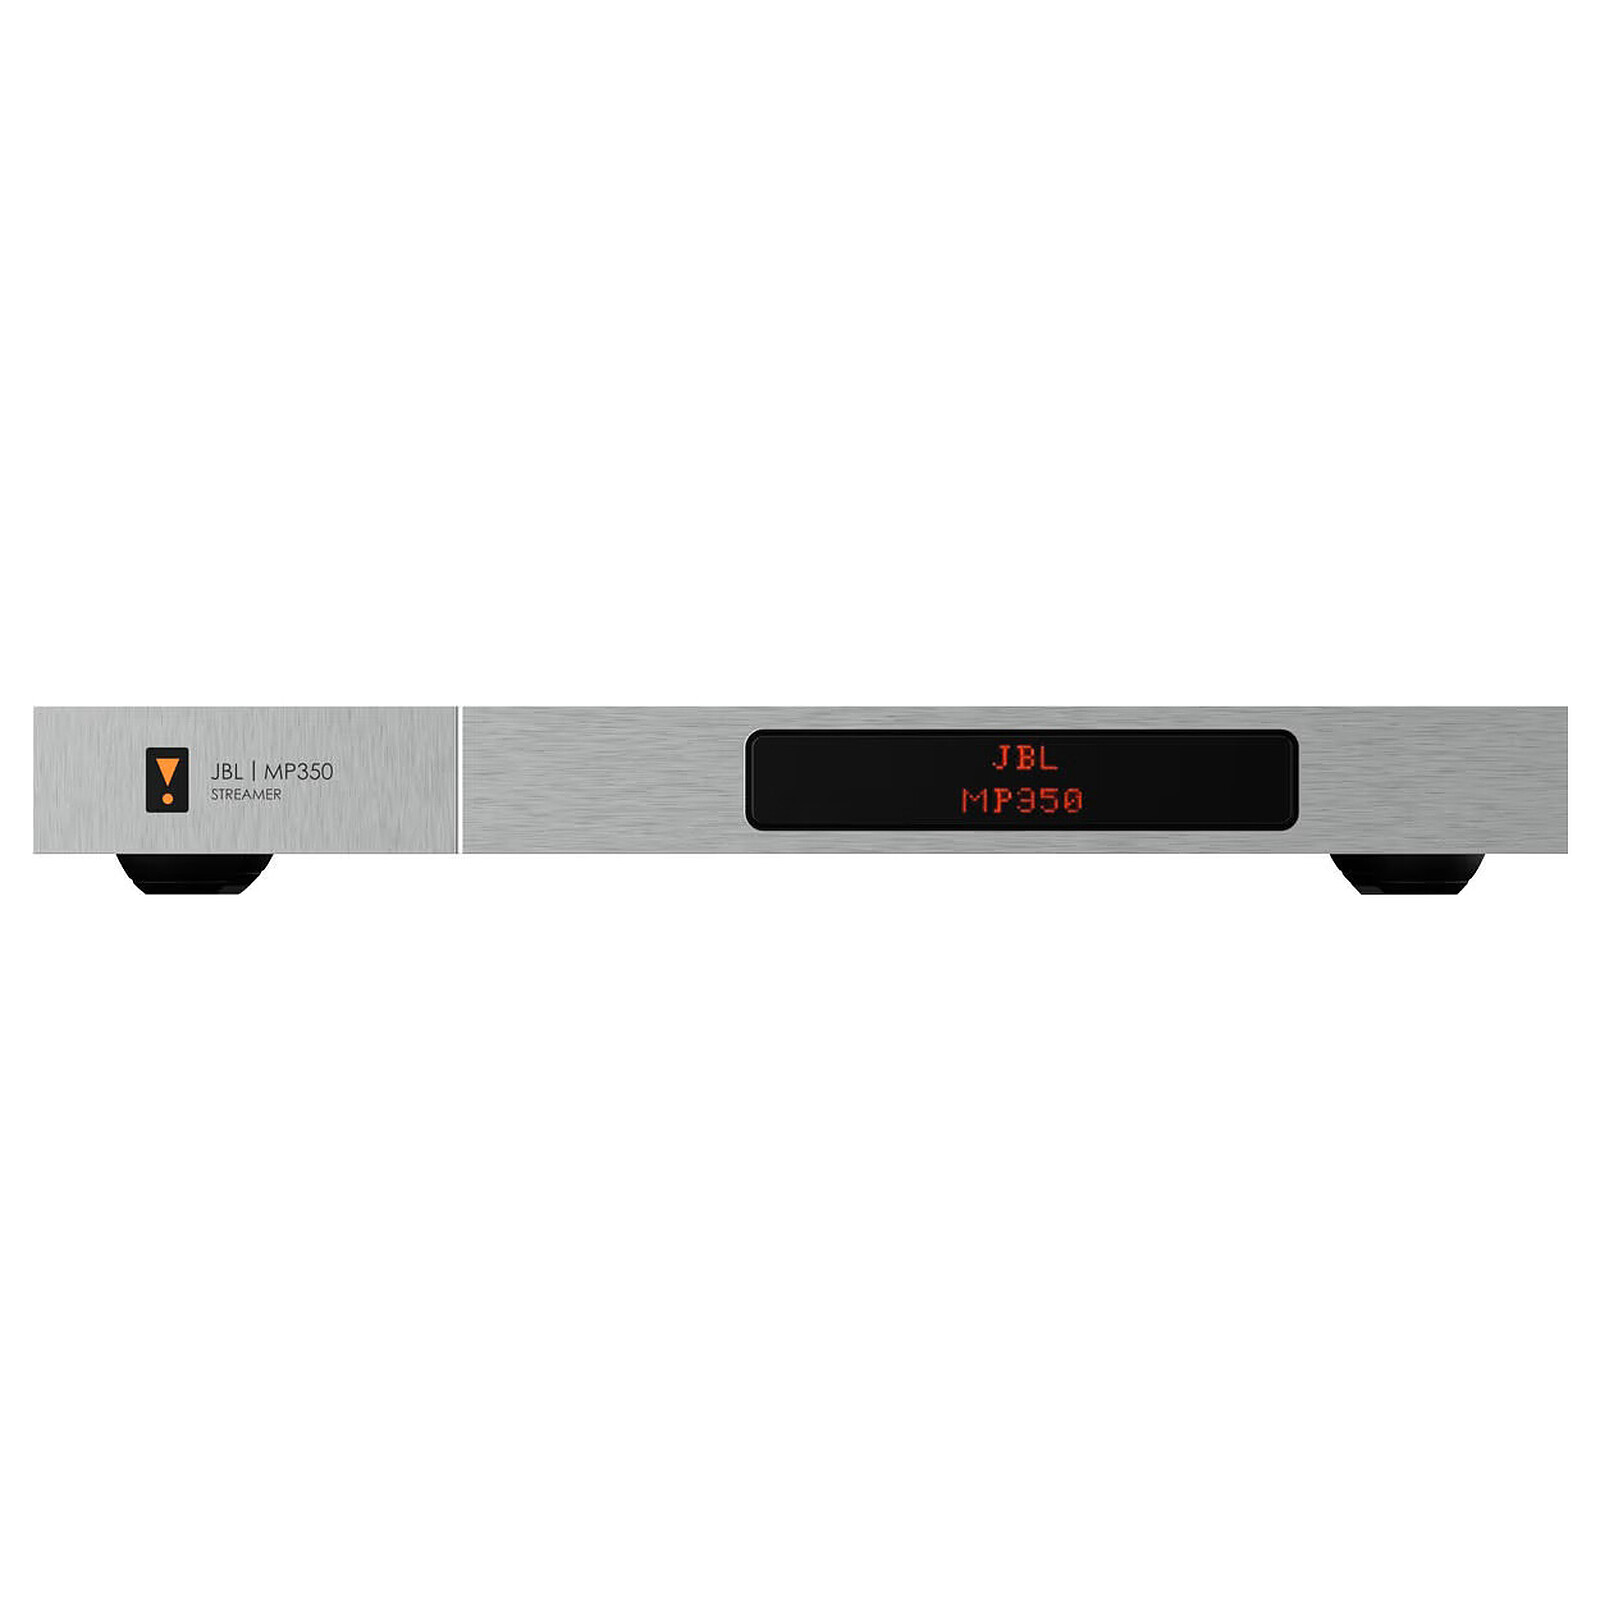 TP-LINK HA100 - Réseau & Streaming audio - Garantie 3 ans LDLC